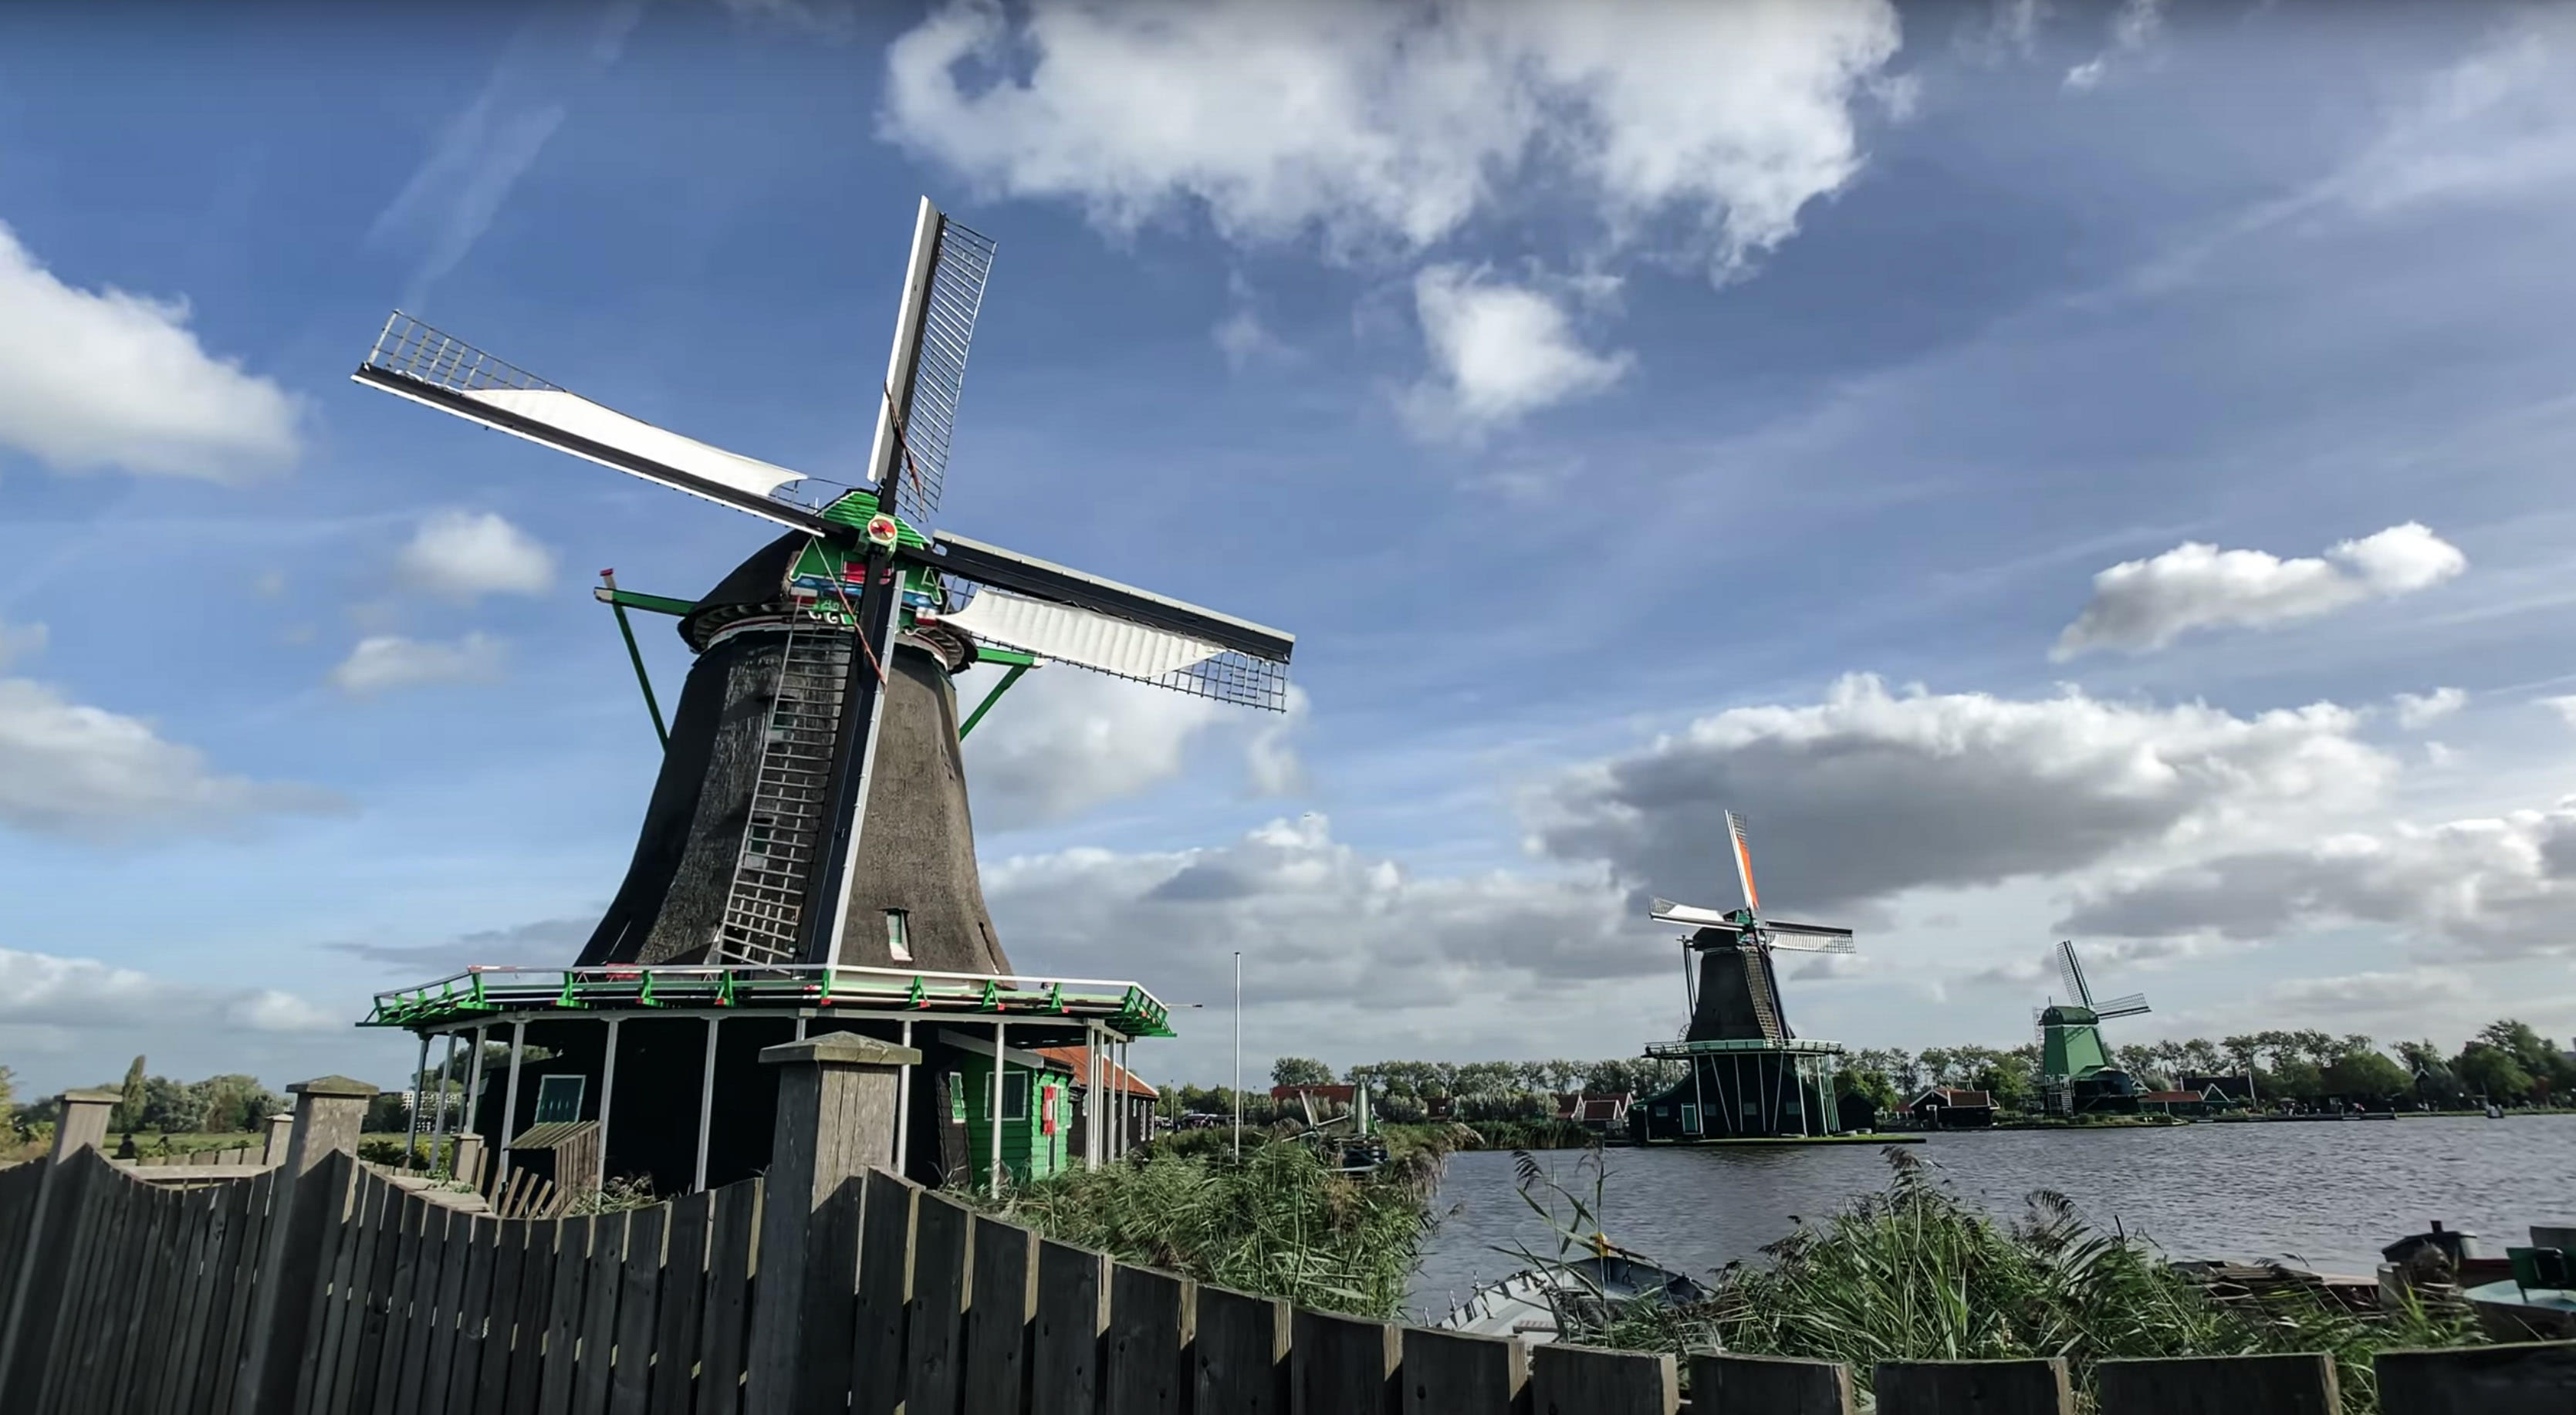 Путешествие по Голландии. Ветряные мельницы в Заансе-Сханс